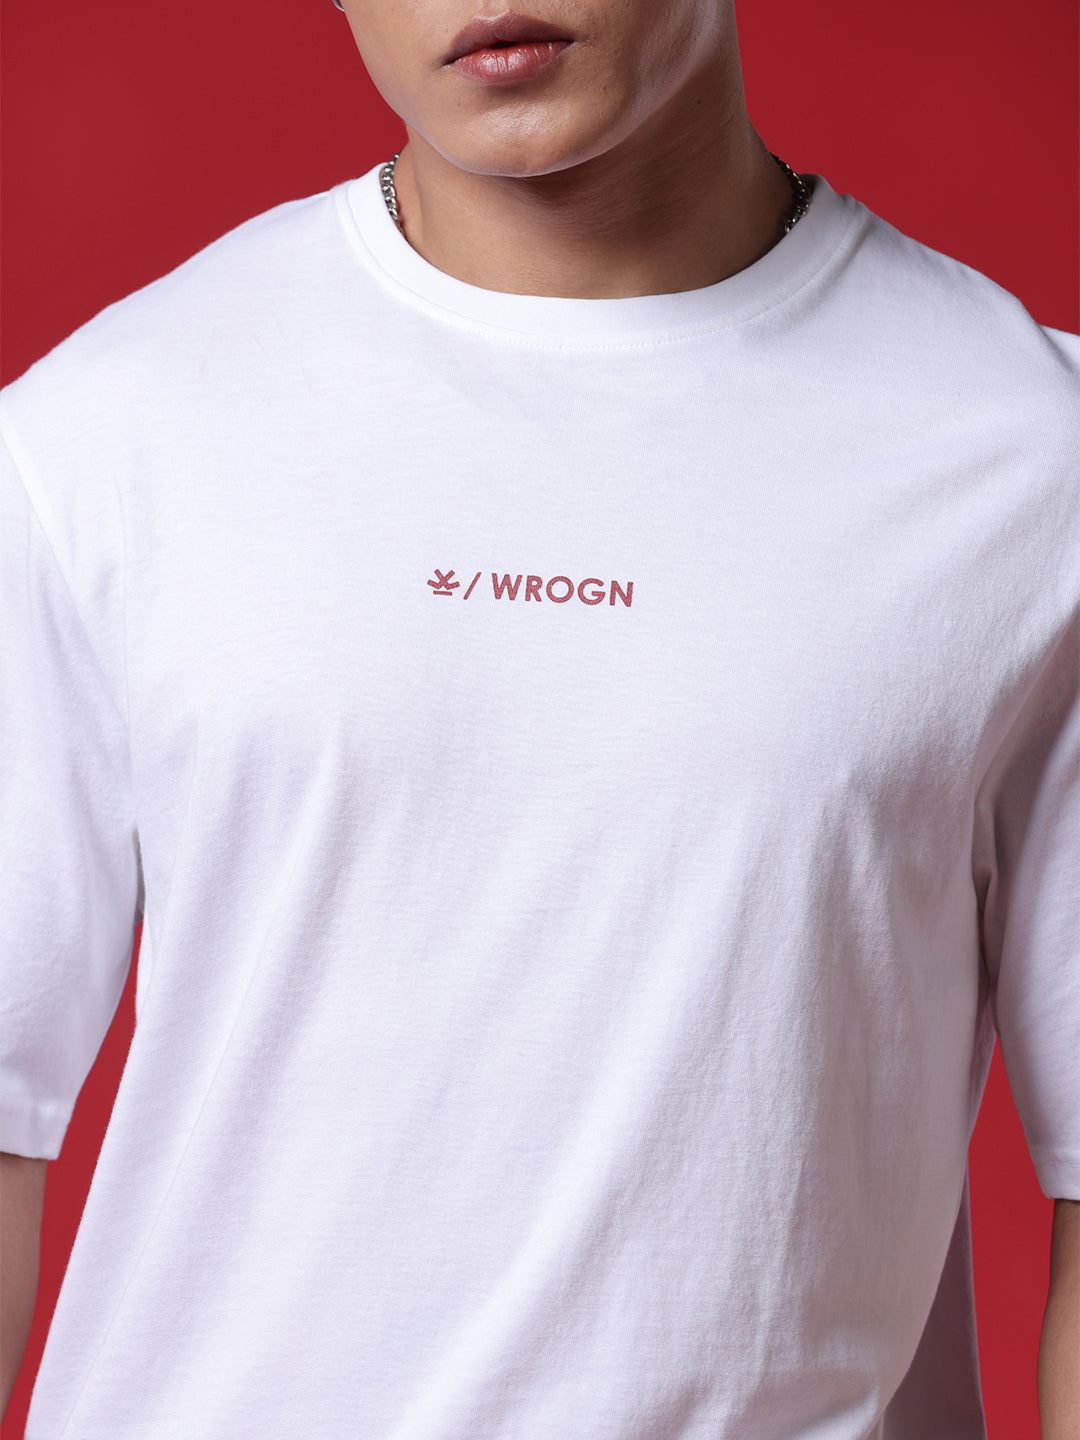 Basic Wrogn White T-Shirt